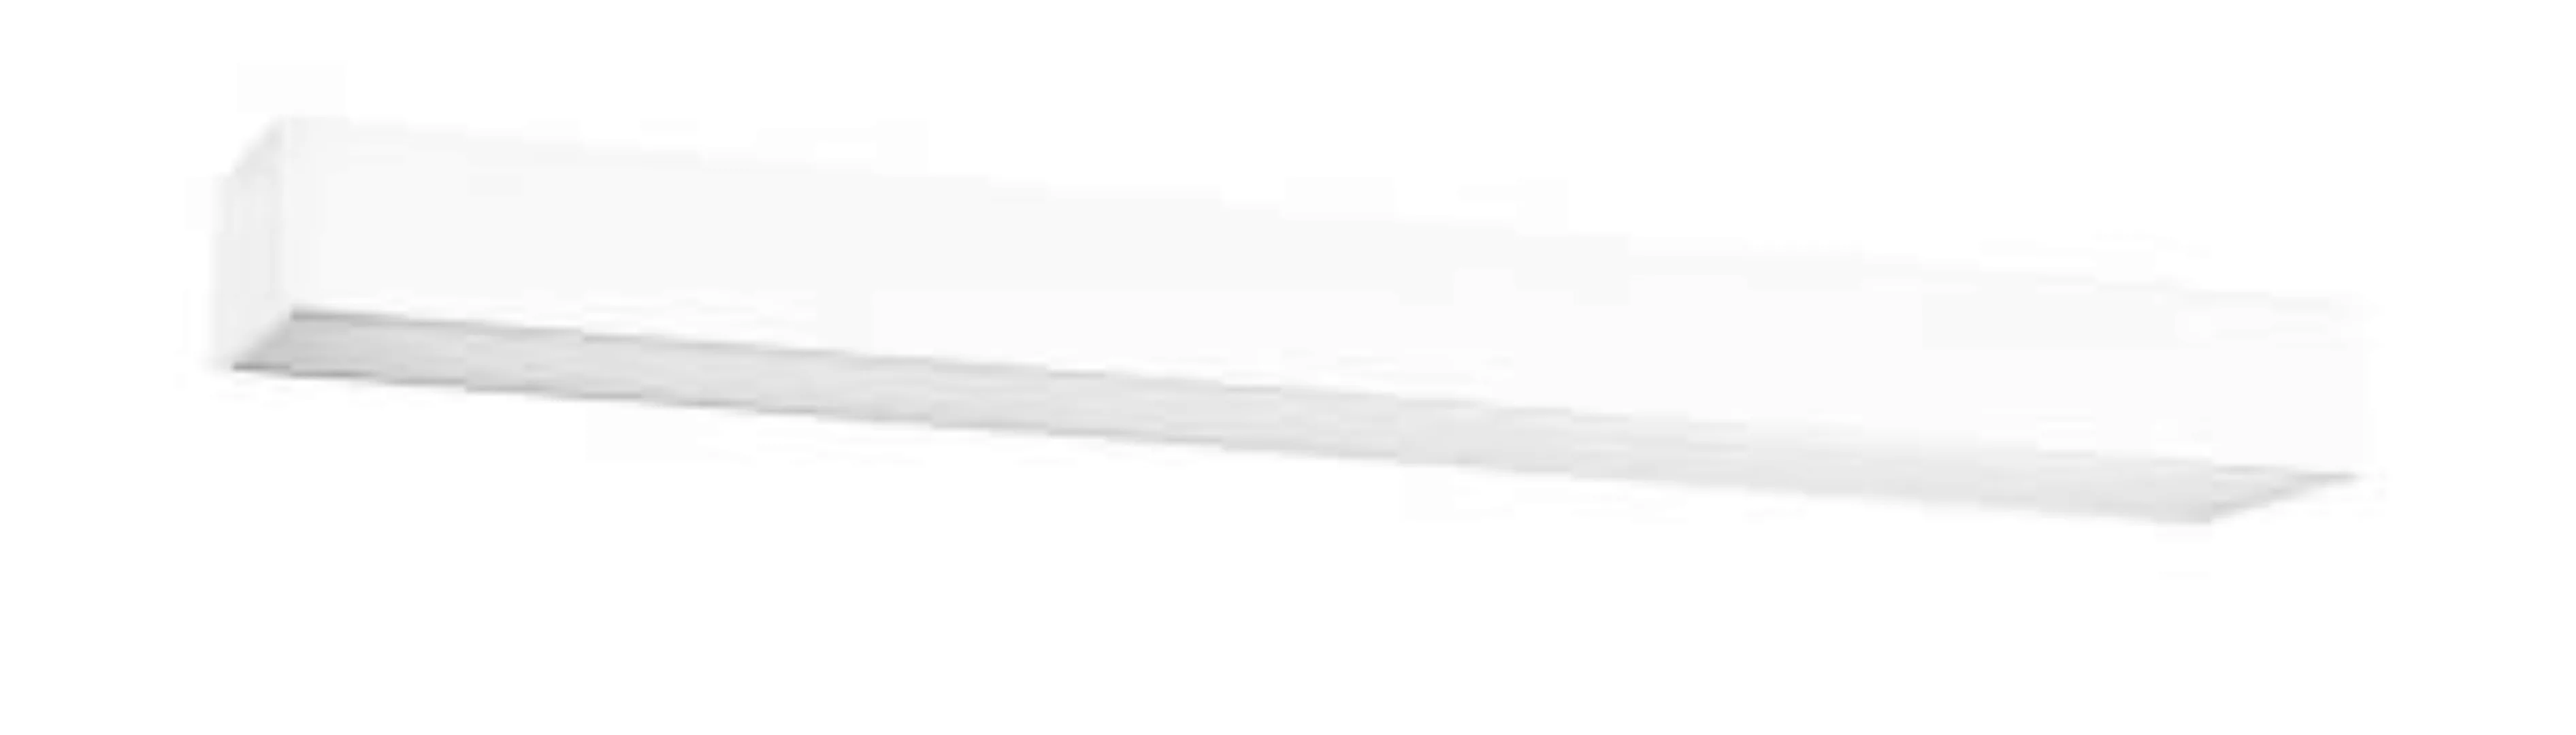 LED Deckenleuchte Weiß Metall 67 cm lang flach KARENA günstig online kaufen